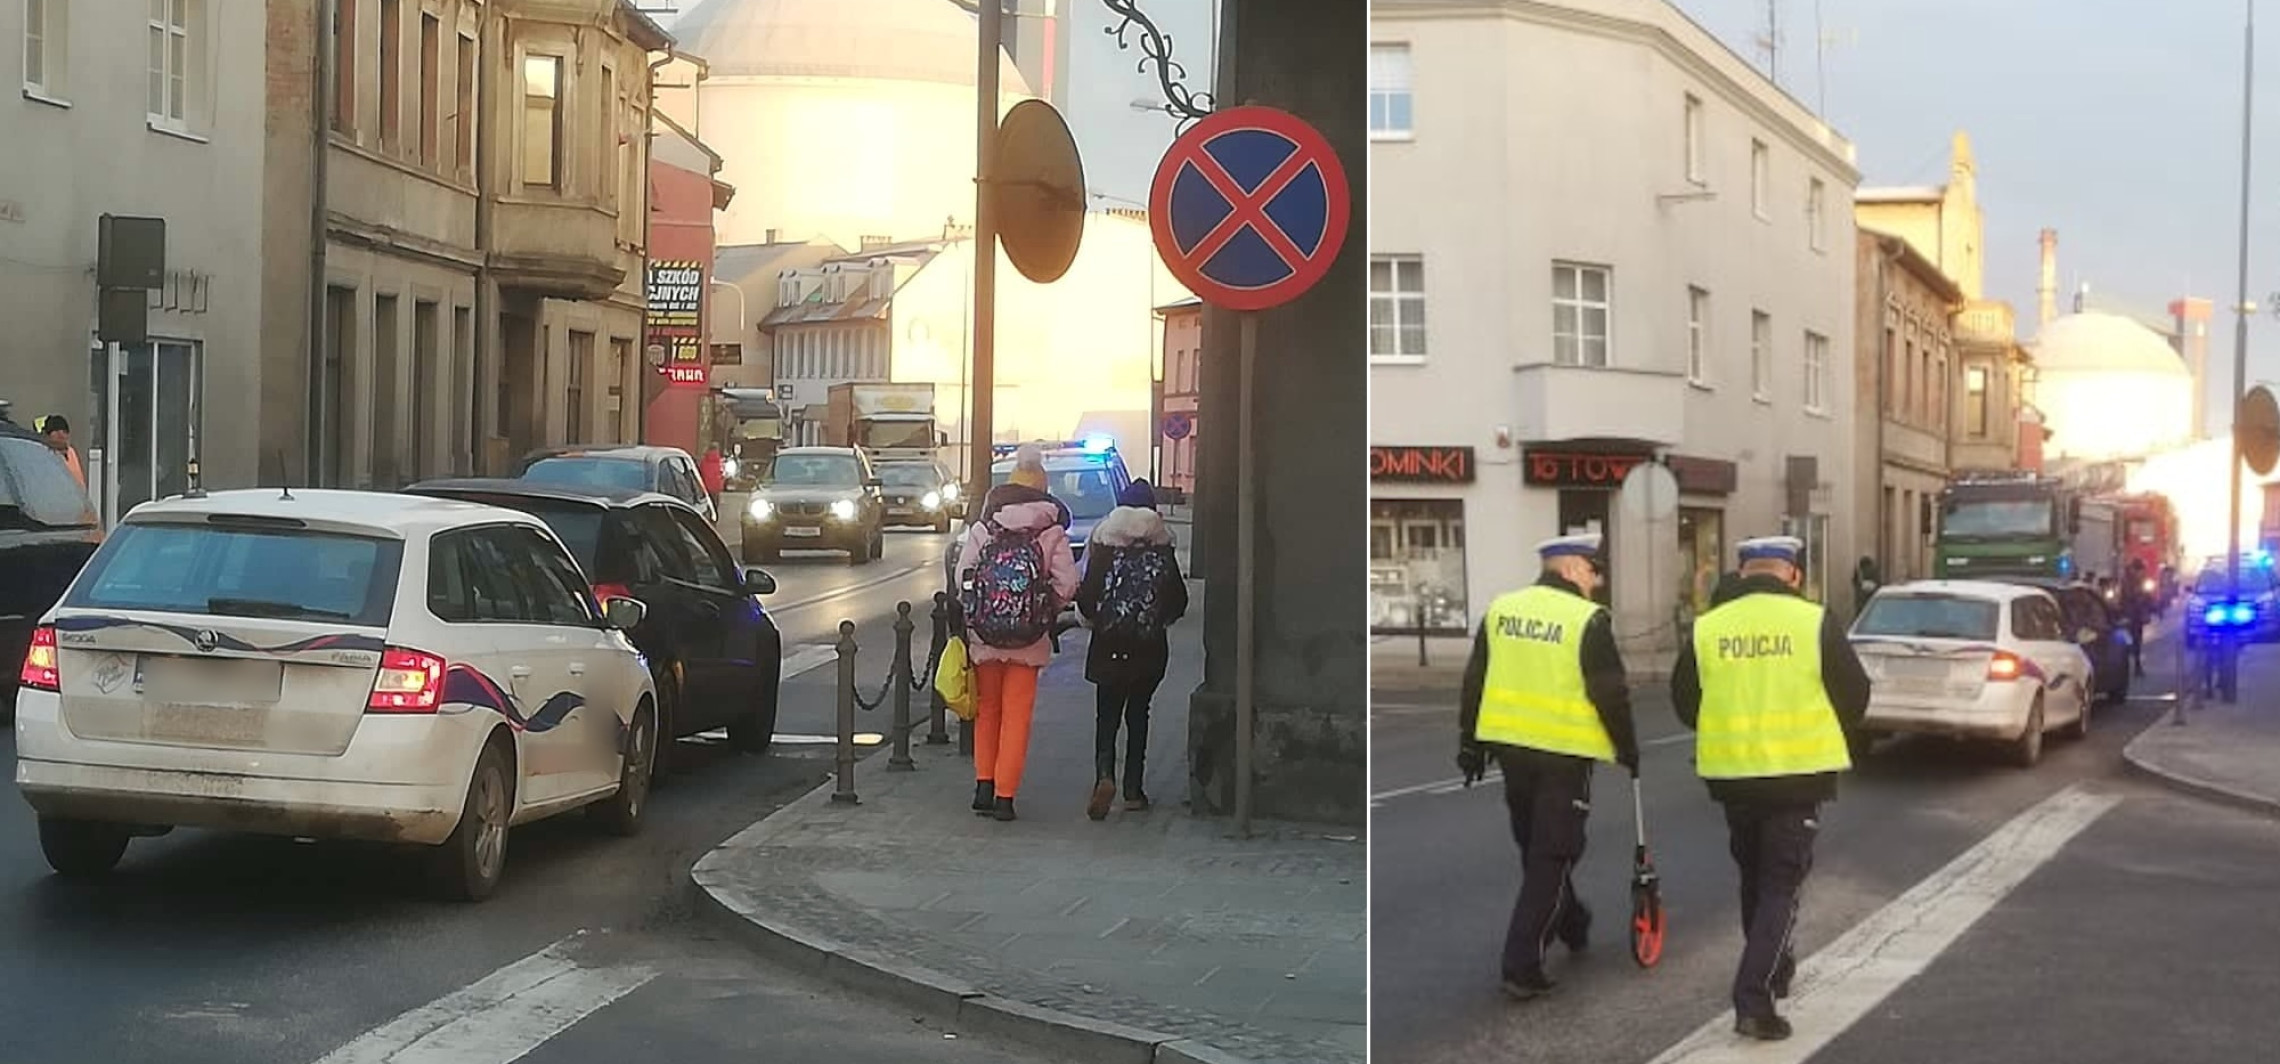 Kruszwica - Zderzenie dwóch aut w centrum Kruszwicy